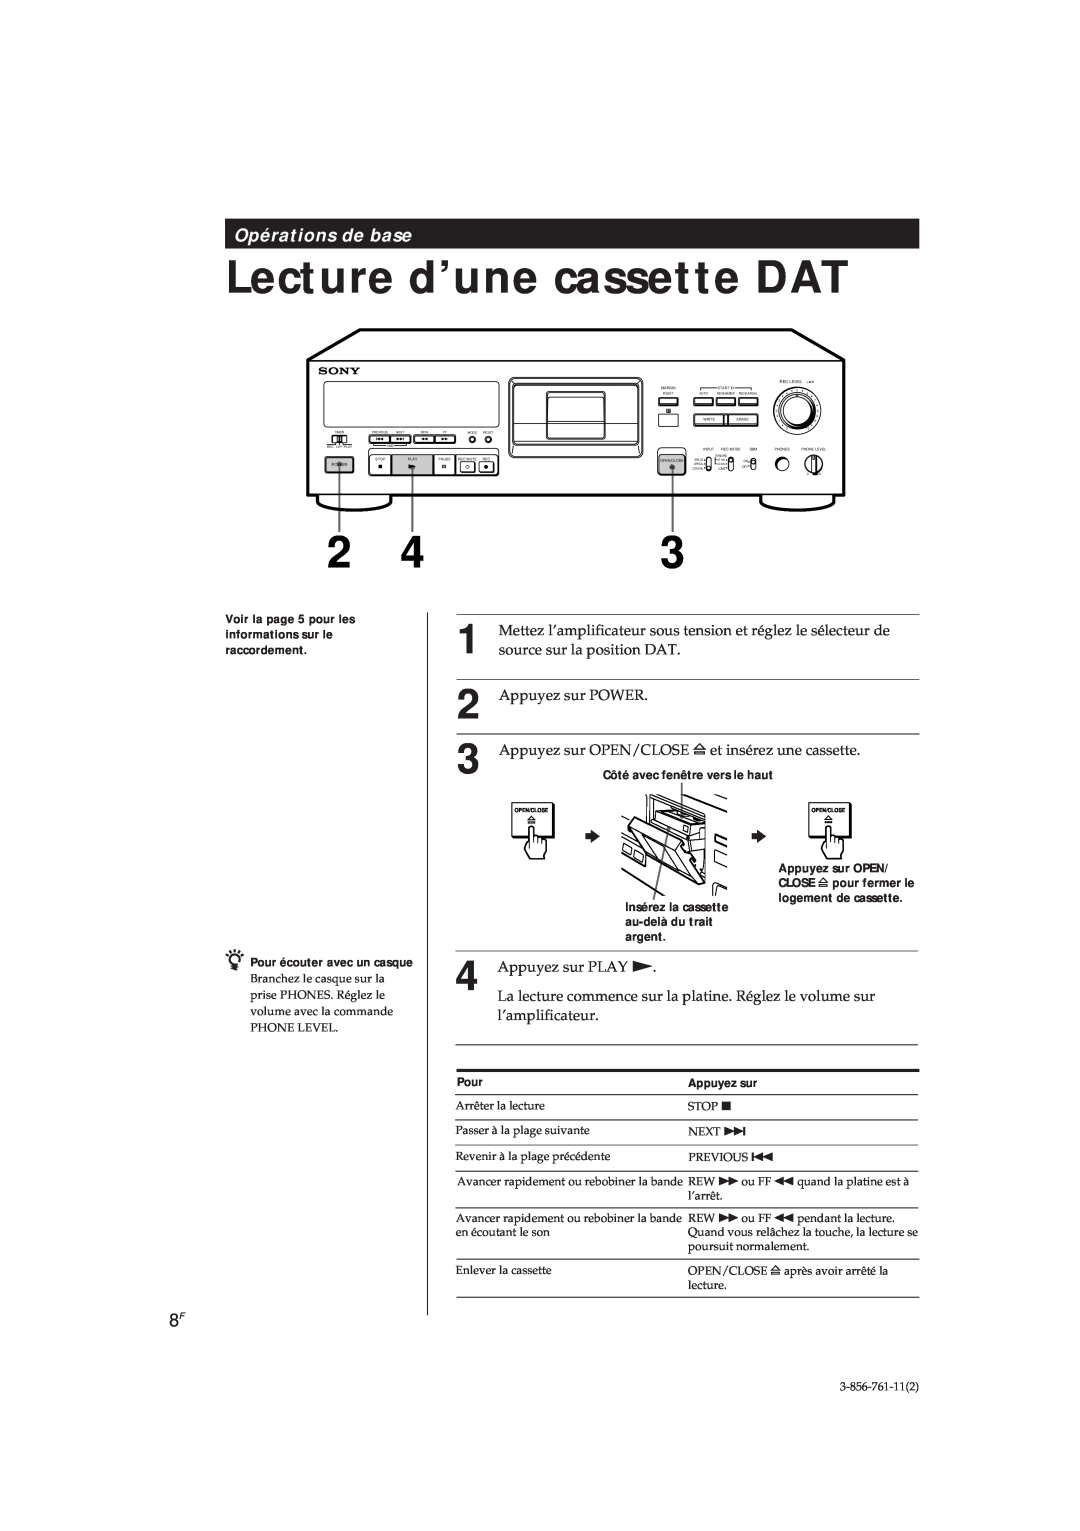 Sony DTC-A6 Lecture d’une cassette DAT, Opérations de base, source sur la position DAT, Appuyez sur POWER, l’amplificateur 